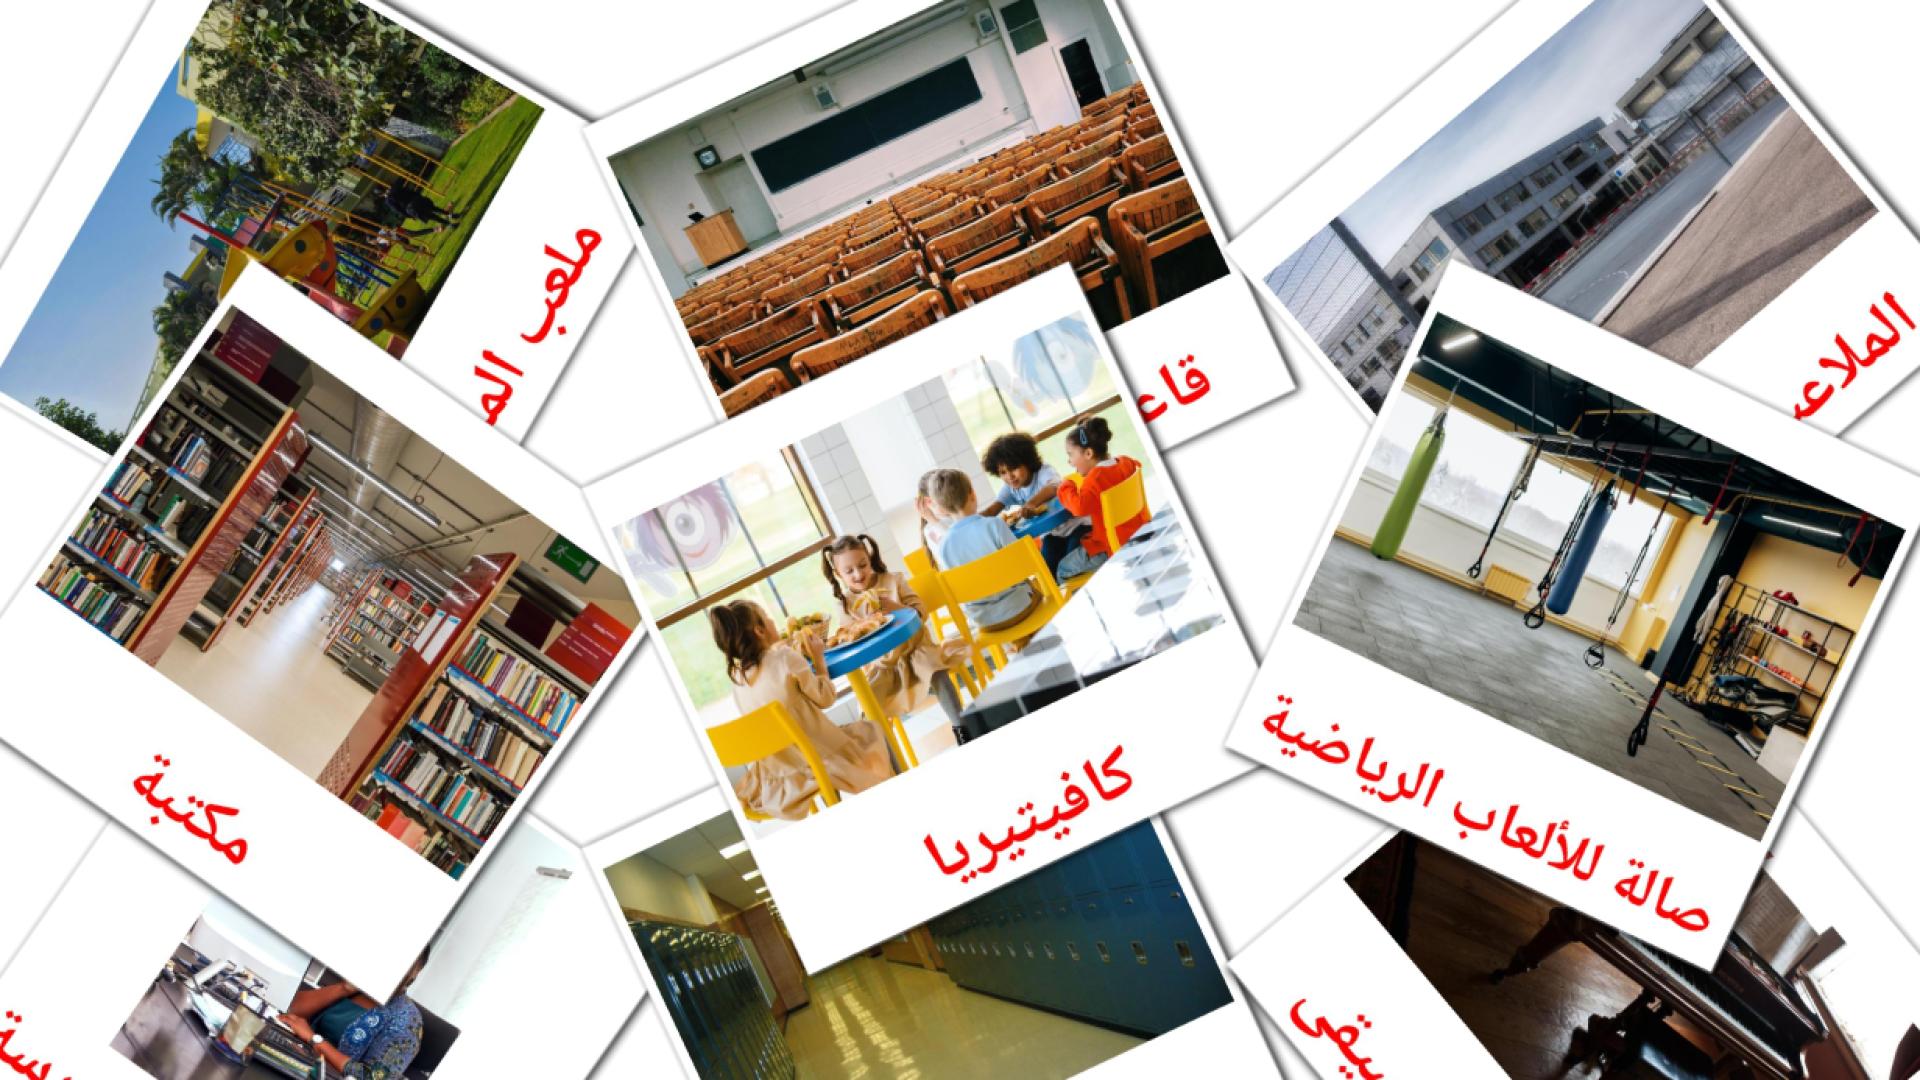 Bâtiment scolaire - cartes de vocabulaire arabe